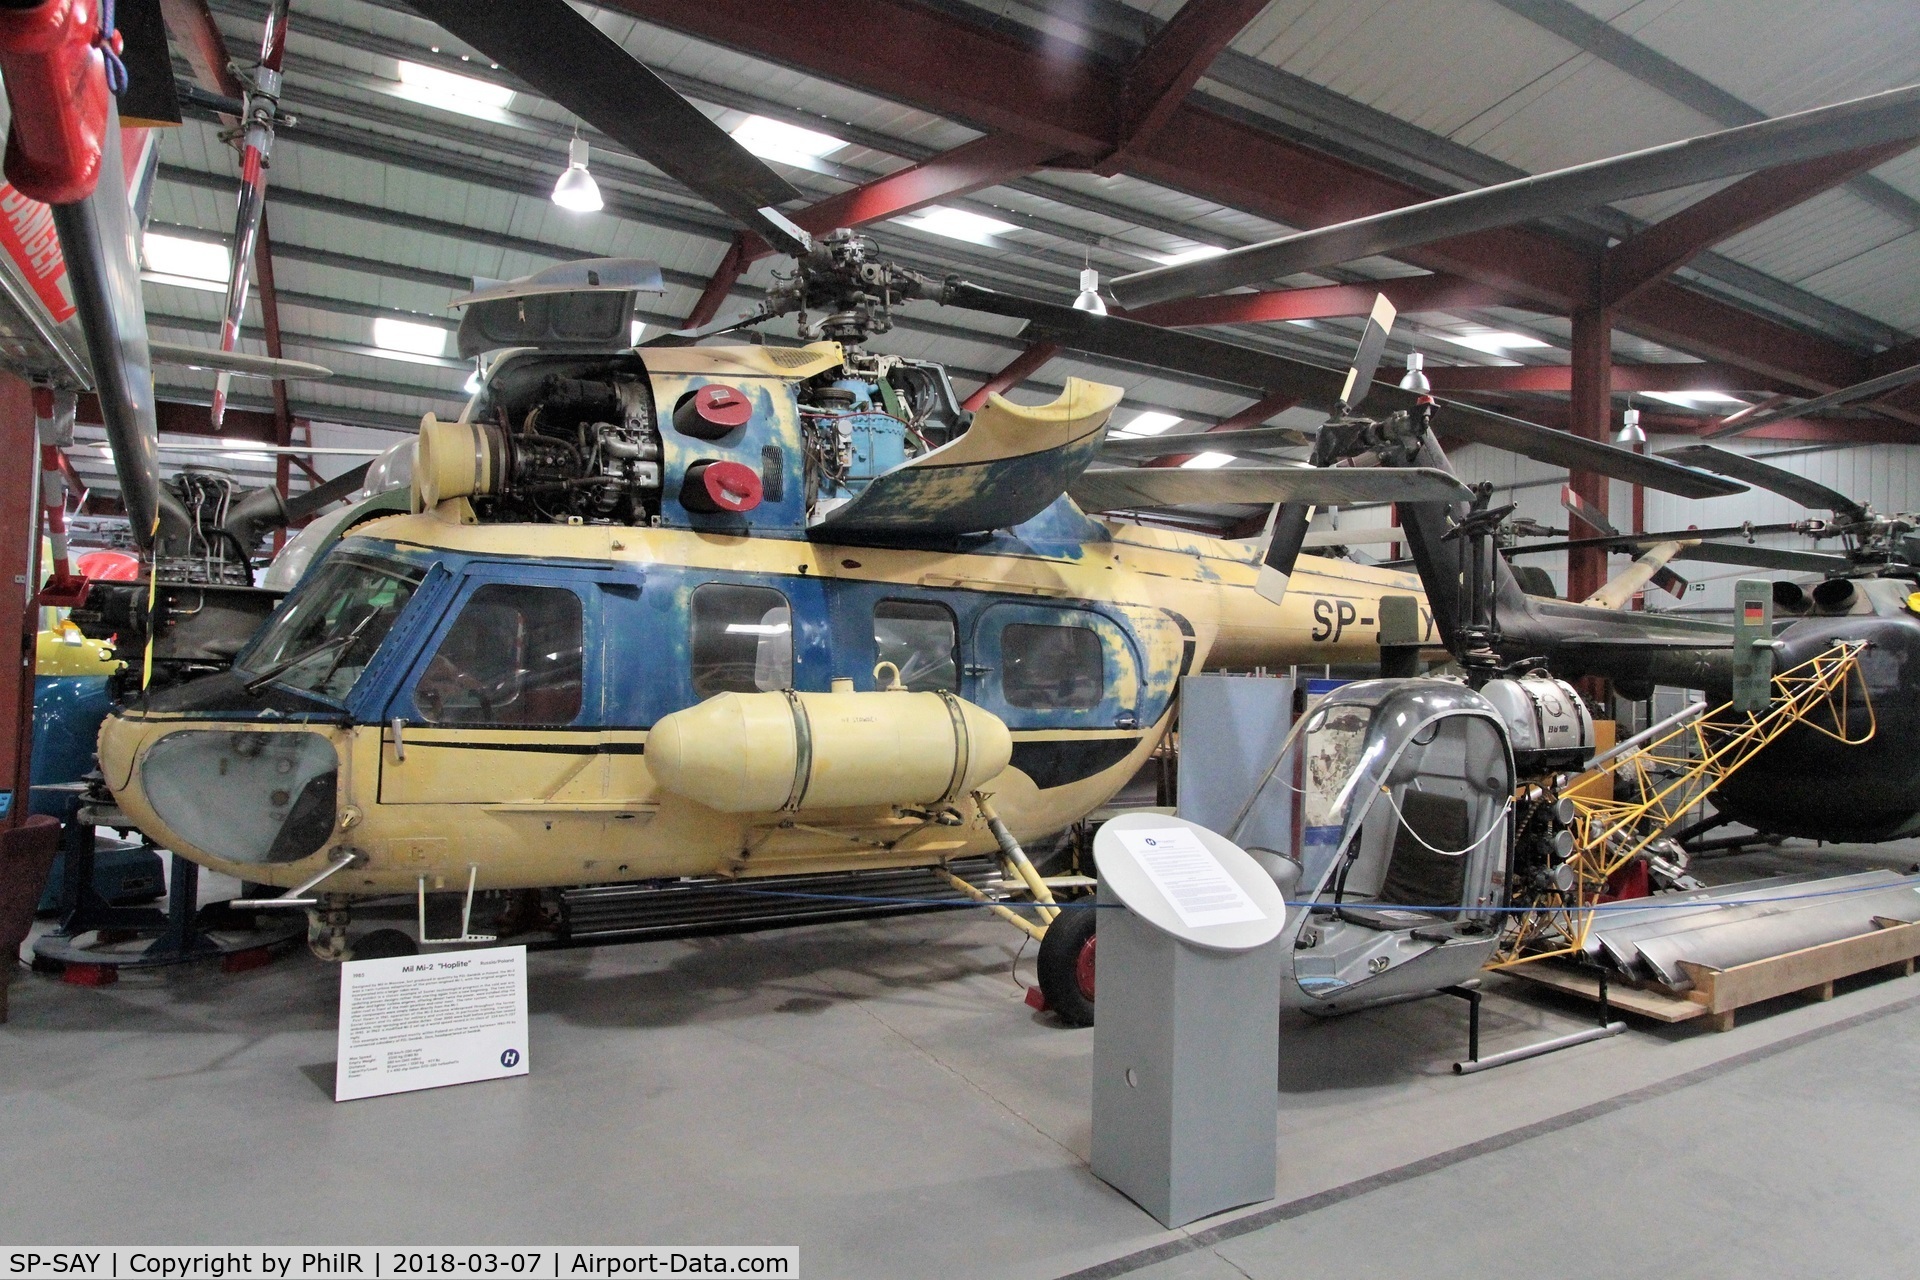 SP-SAY, 1985 PZL-Swidnik Mi-2 C/N 529538125, SP-LAY 1985 Mil (PZL Swidnik) Mi-2 Helicopter Museum